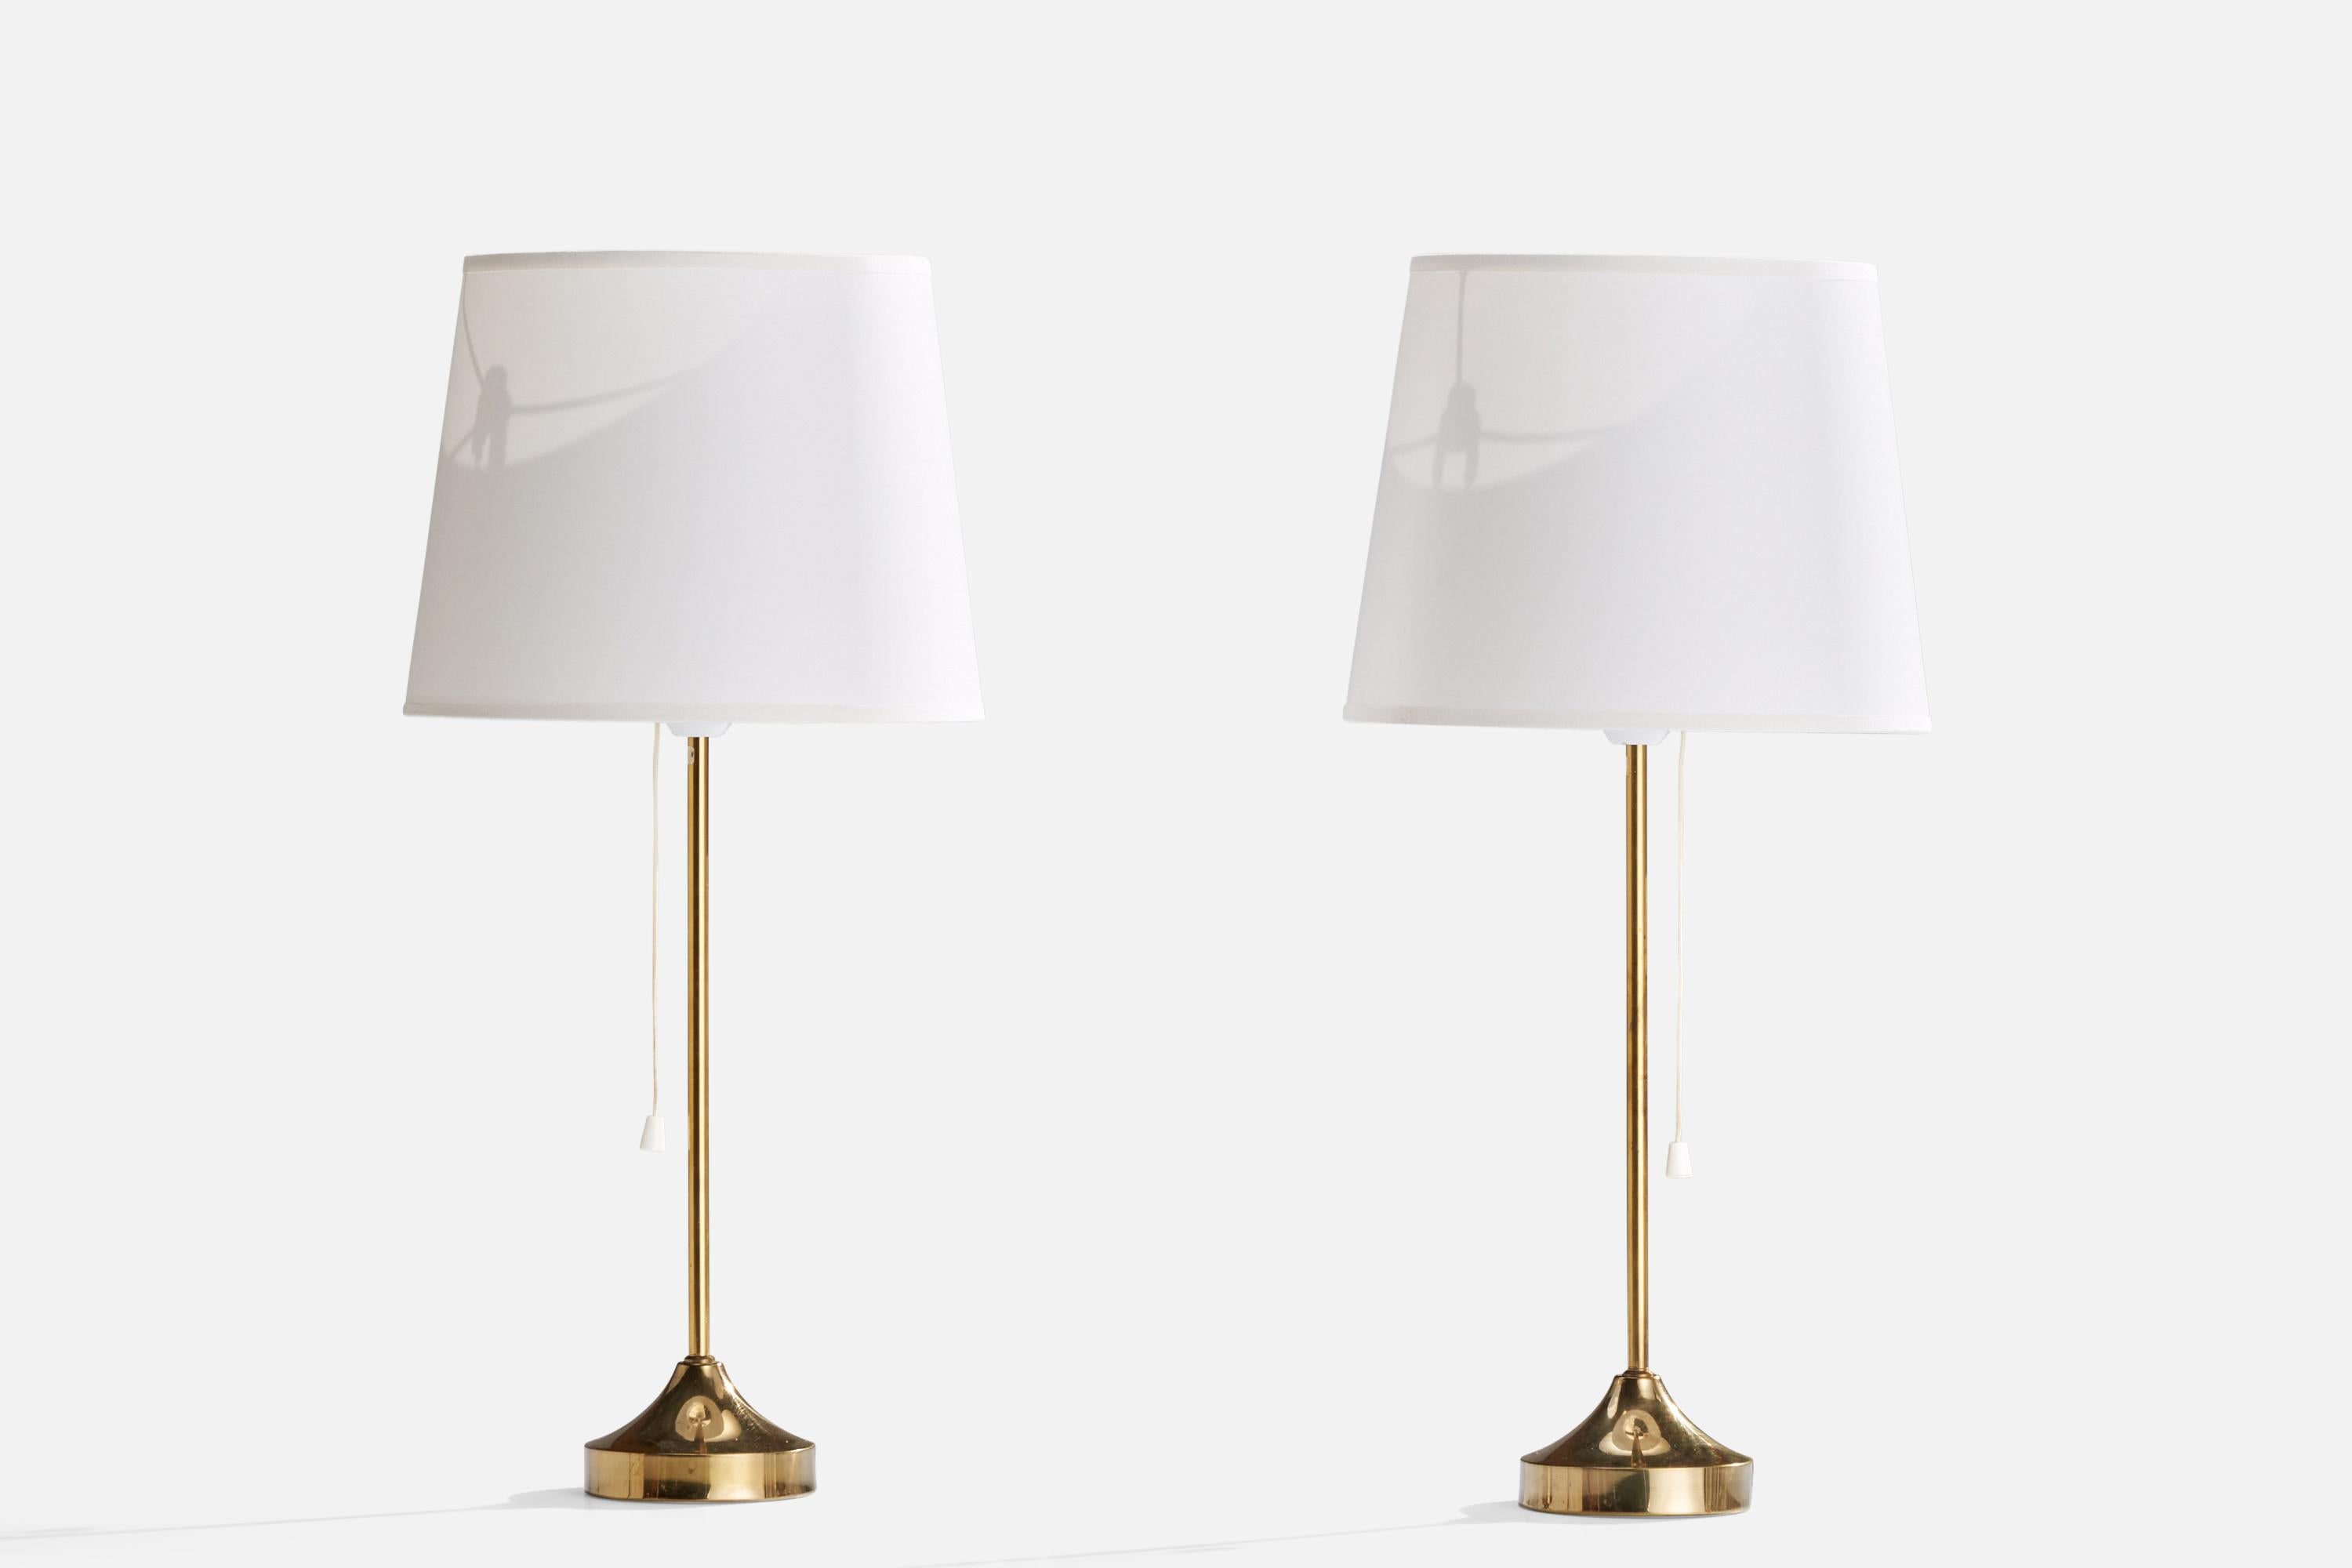 Paire de lampes de table en laiton et tissu blanc, conçues et produites par NAFA, Suède, années 1950.

Dimensions de la lampe (pouces) : 15.75